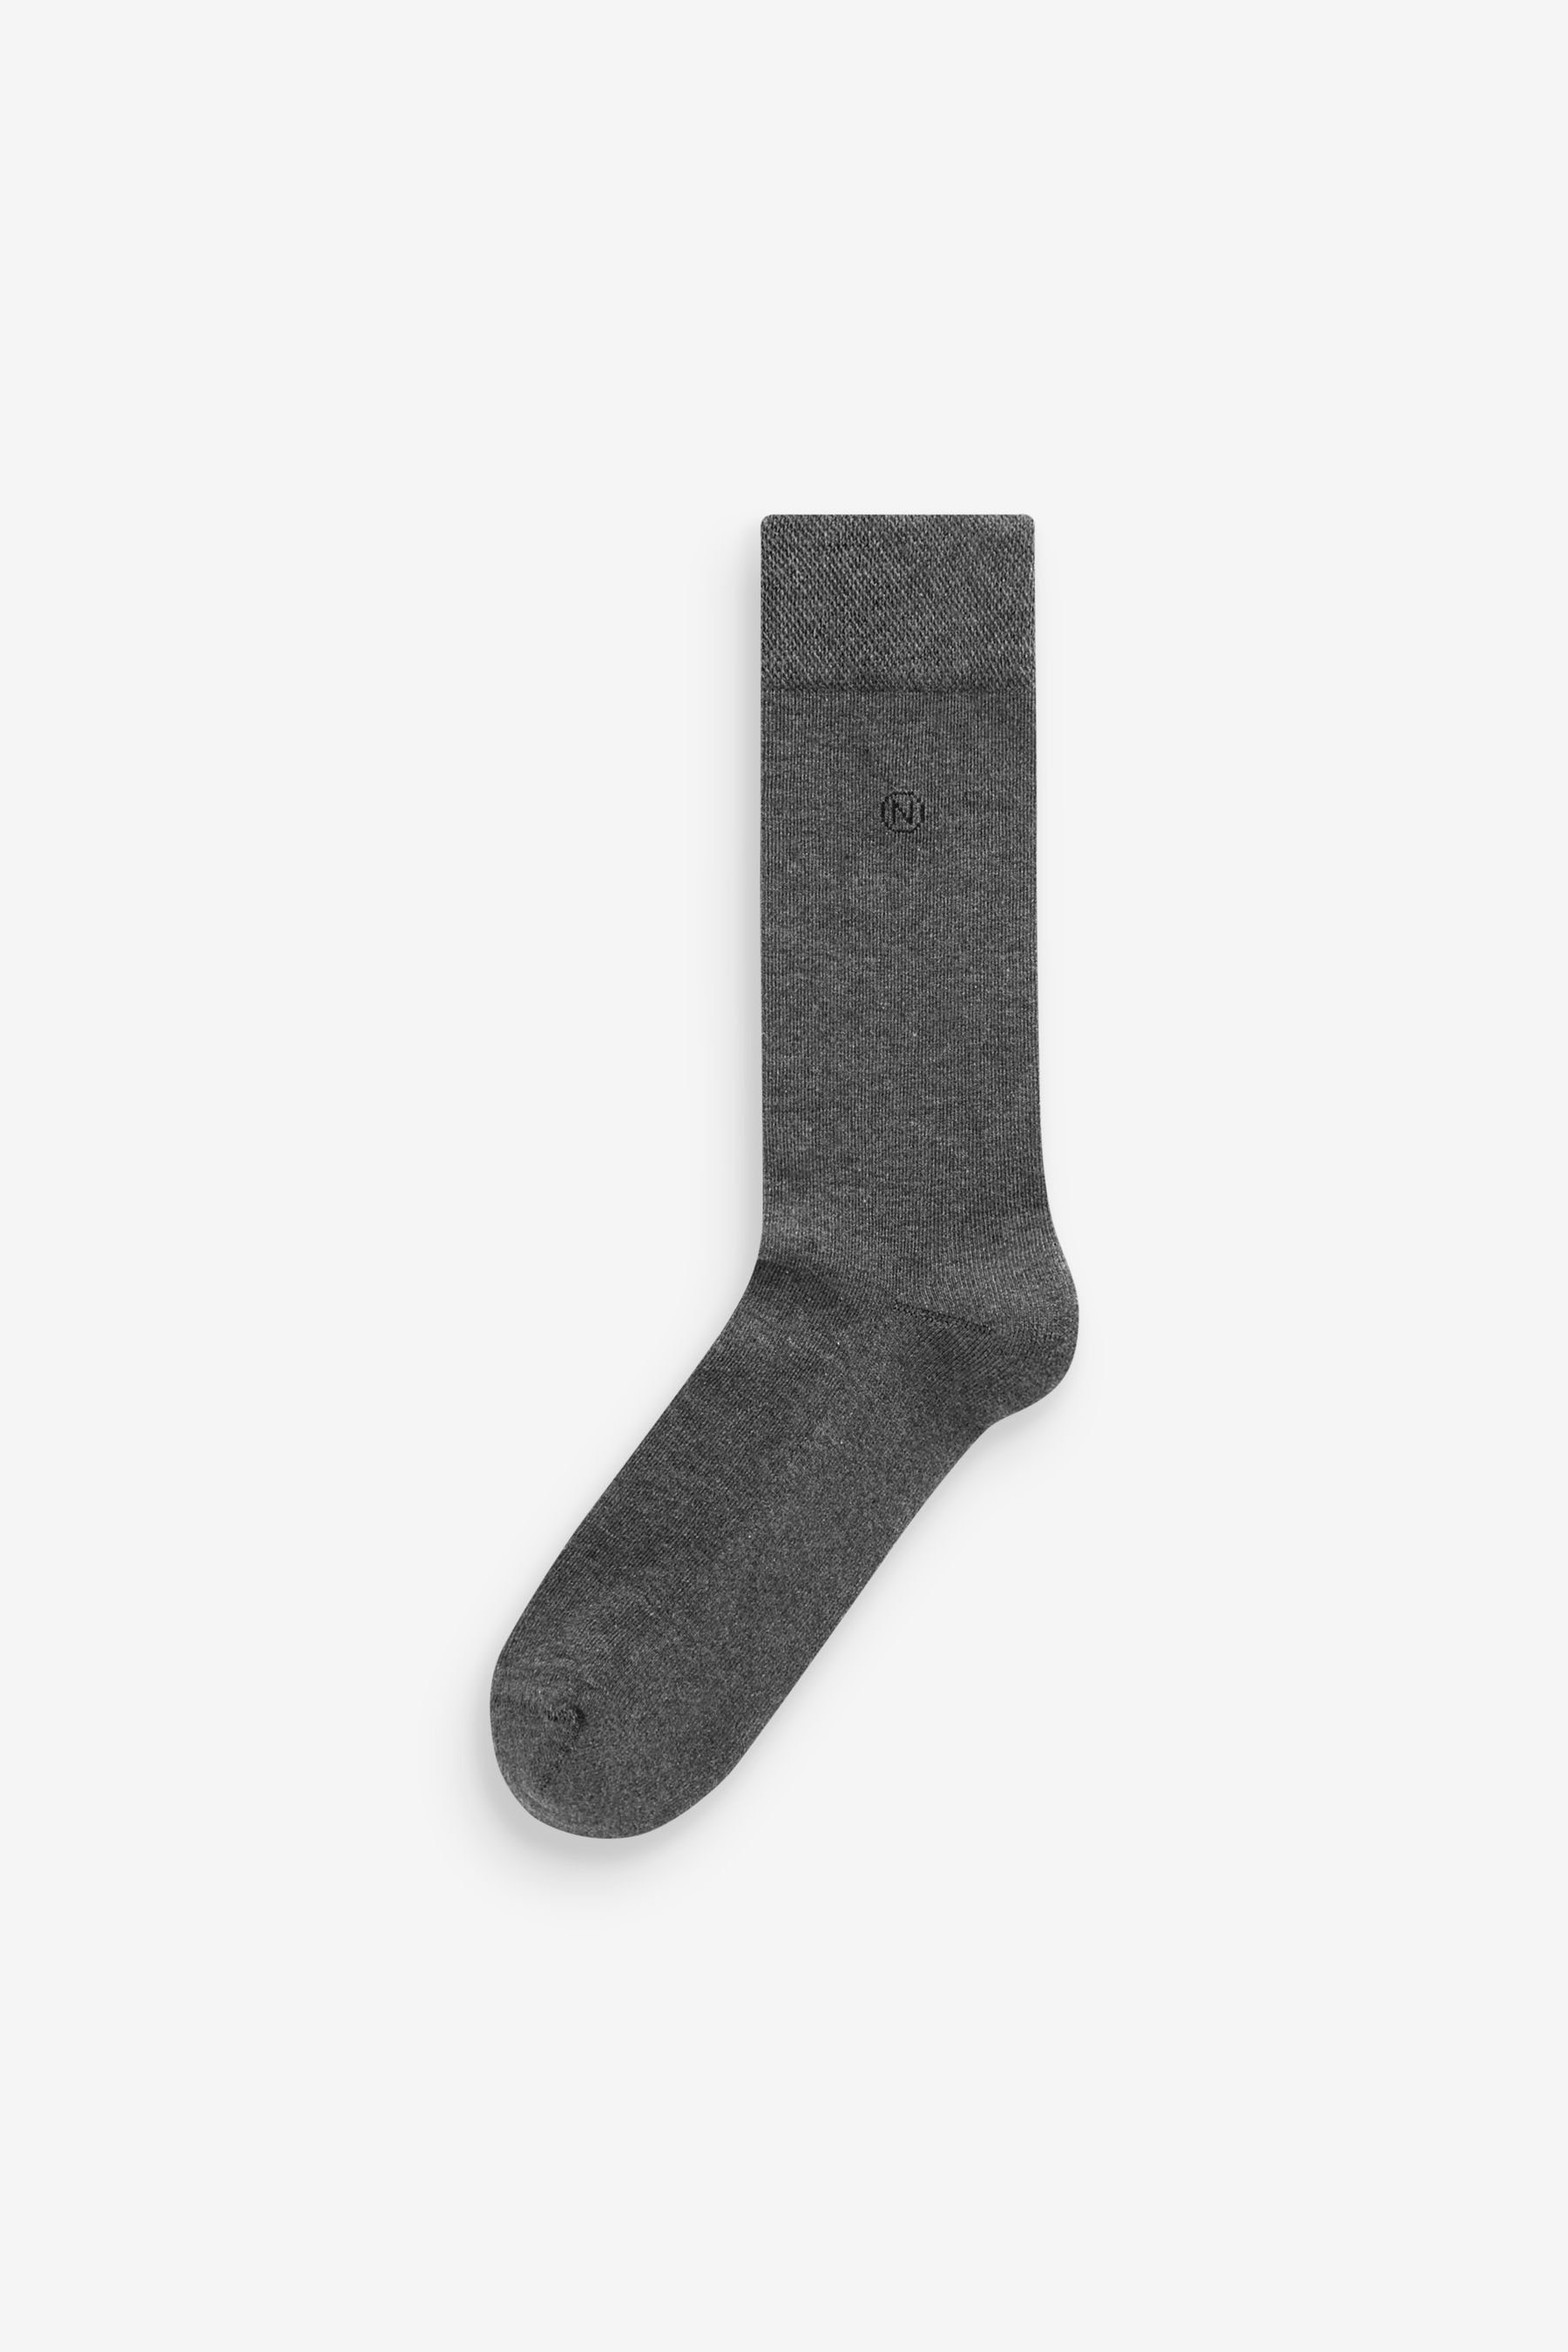 Kurzsocken Sohle Navy/Grey Next mit gepolsterter 5er-Pack (5-Paar) Socken